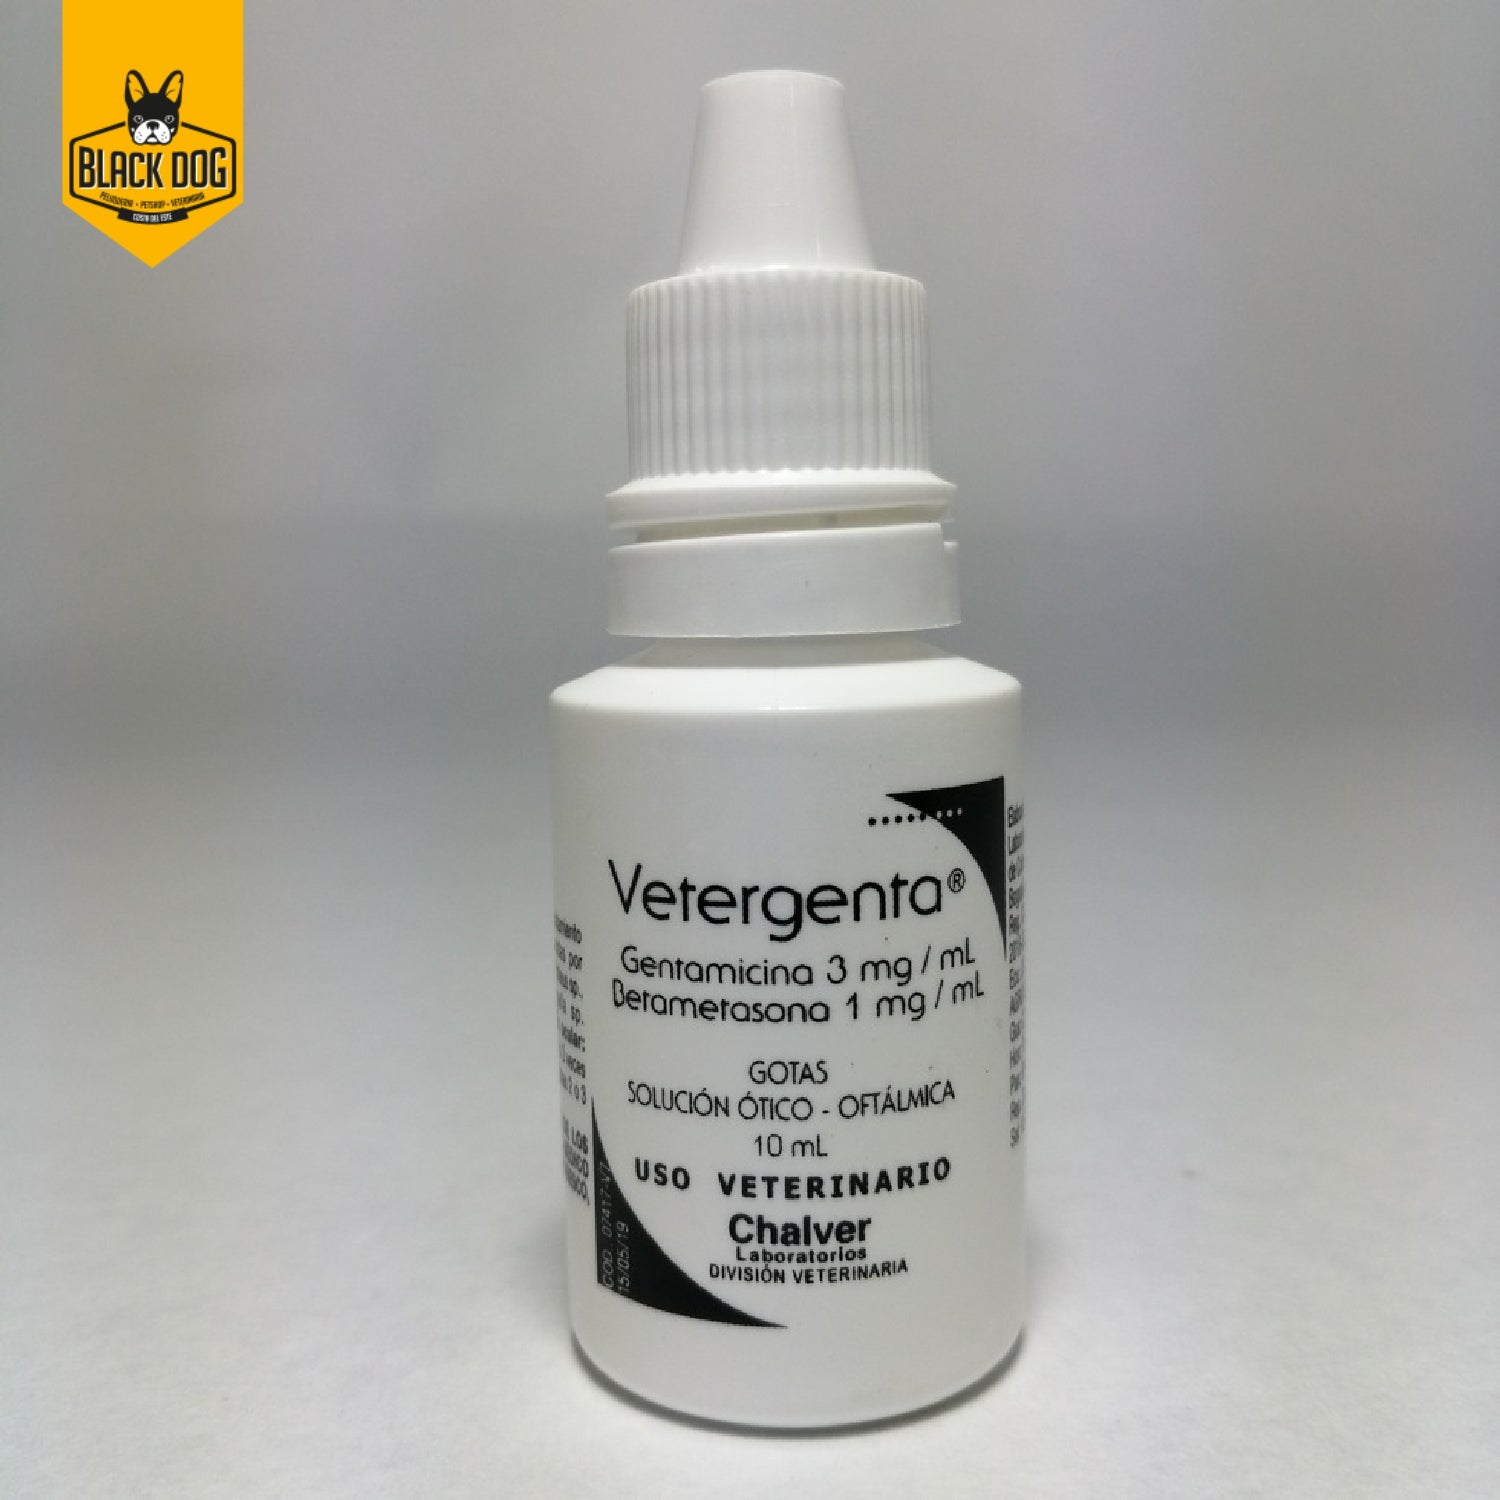 VETERGENTA | Gentamicina - Betametasona | Gotas Oticas y Oftálmicas | 10 ml - BlackDogPanama